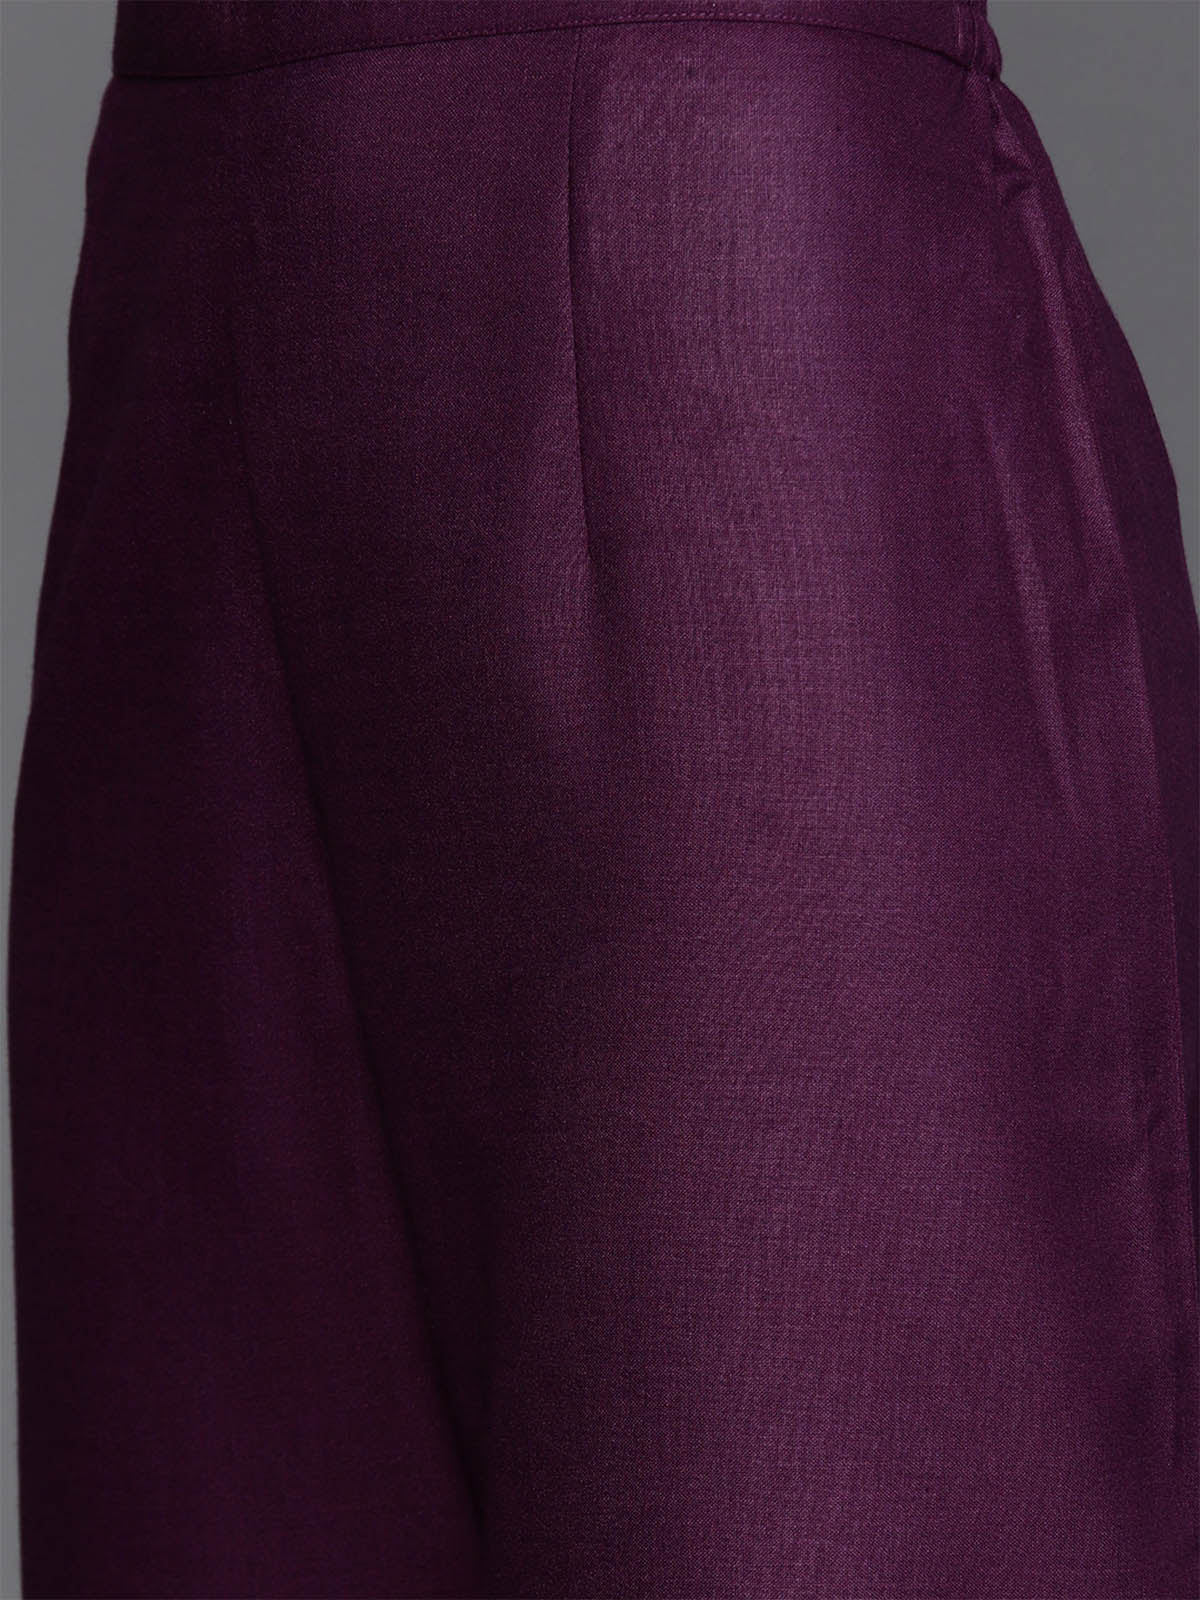 Odette Women Purple Solid Straight Stitched Kurta Palazzo With Dupatta Set